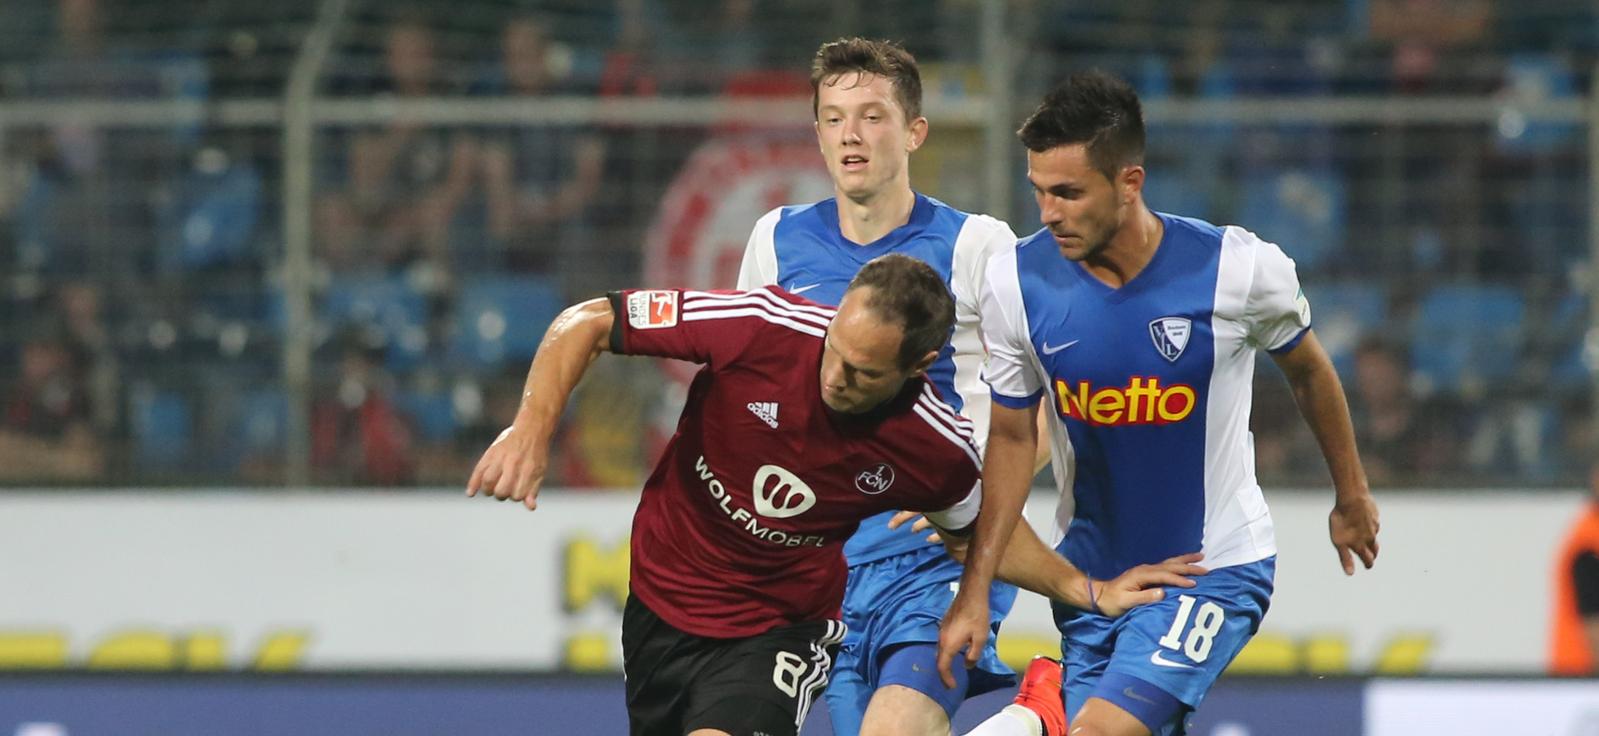 Auf Sparkurs: Der VfL Bochum (in Blau) will künftig mehr U19-Spielern den Sprung in den Profibereich ermöglichen.